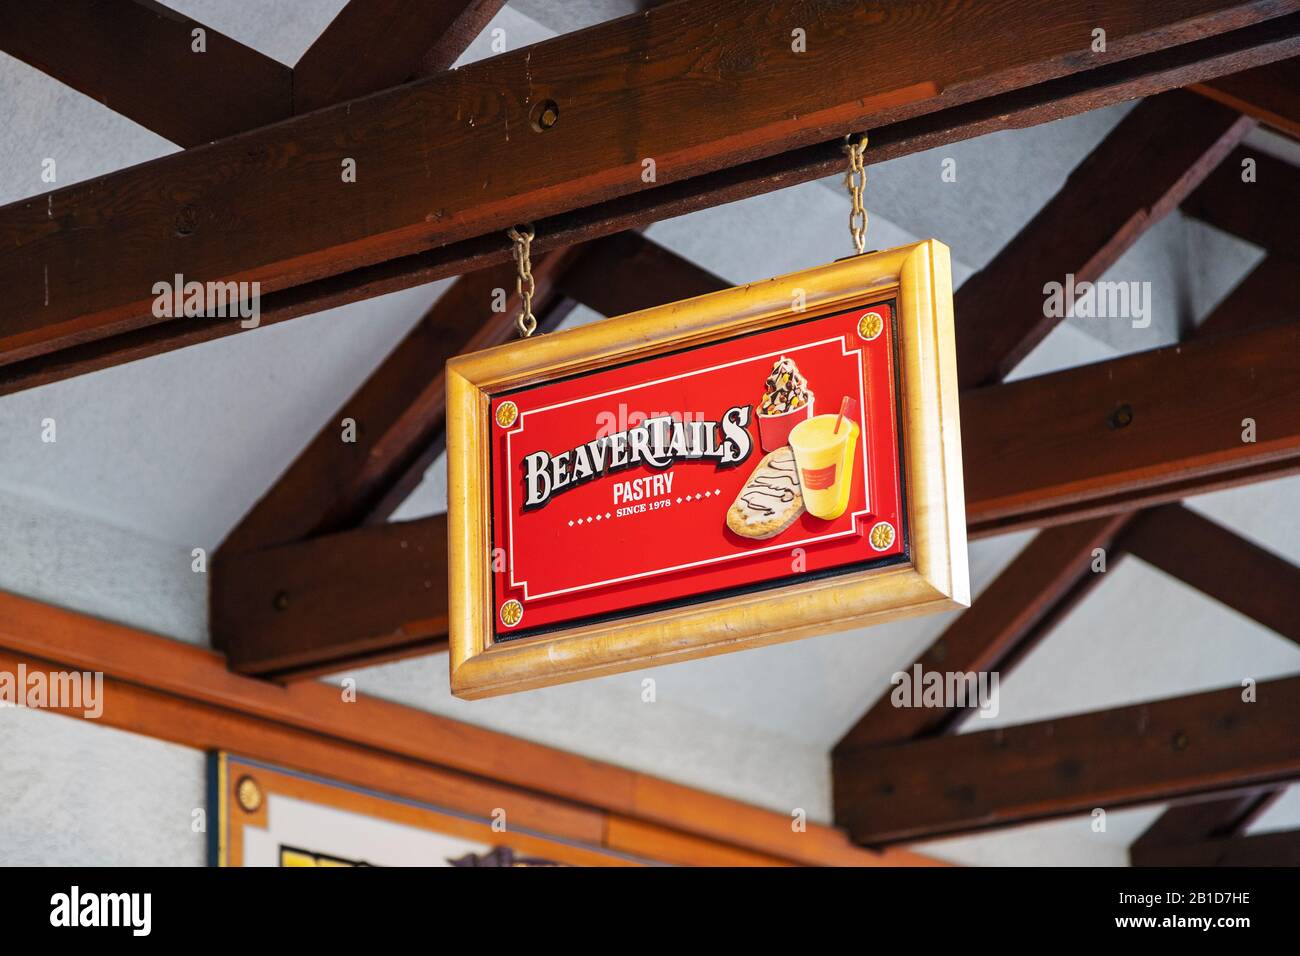 Banff, KANADA - 15. FEBRUAR 2020: Berühmtes kanadisches BeaverTails Restaurant mit seinem Schild an der belebten Banff Avenue in Alberta, Kanada. Stockfoto